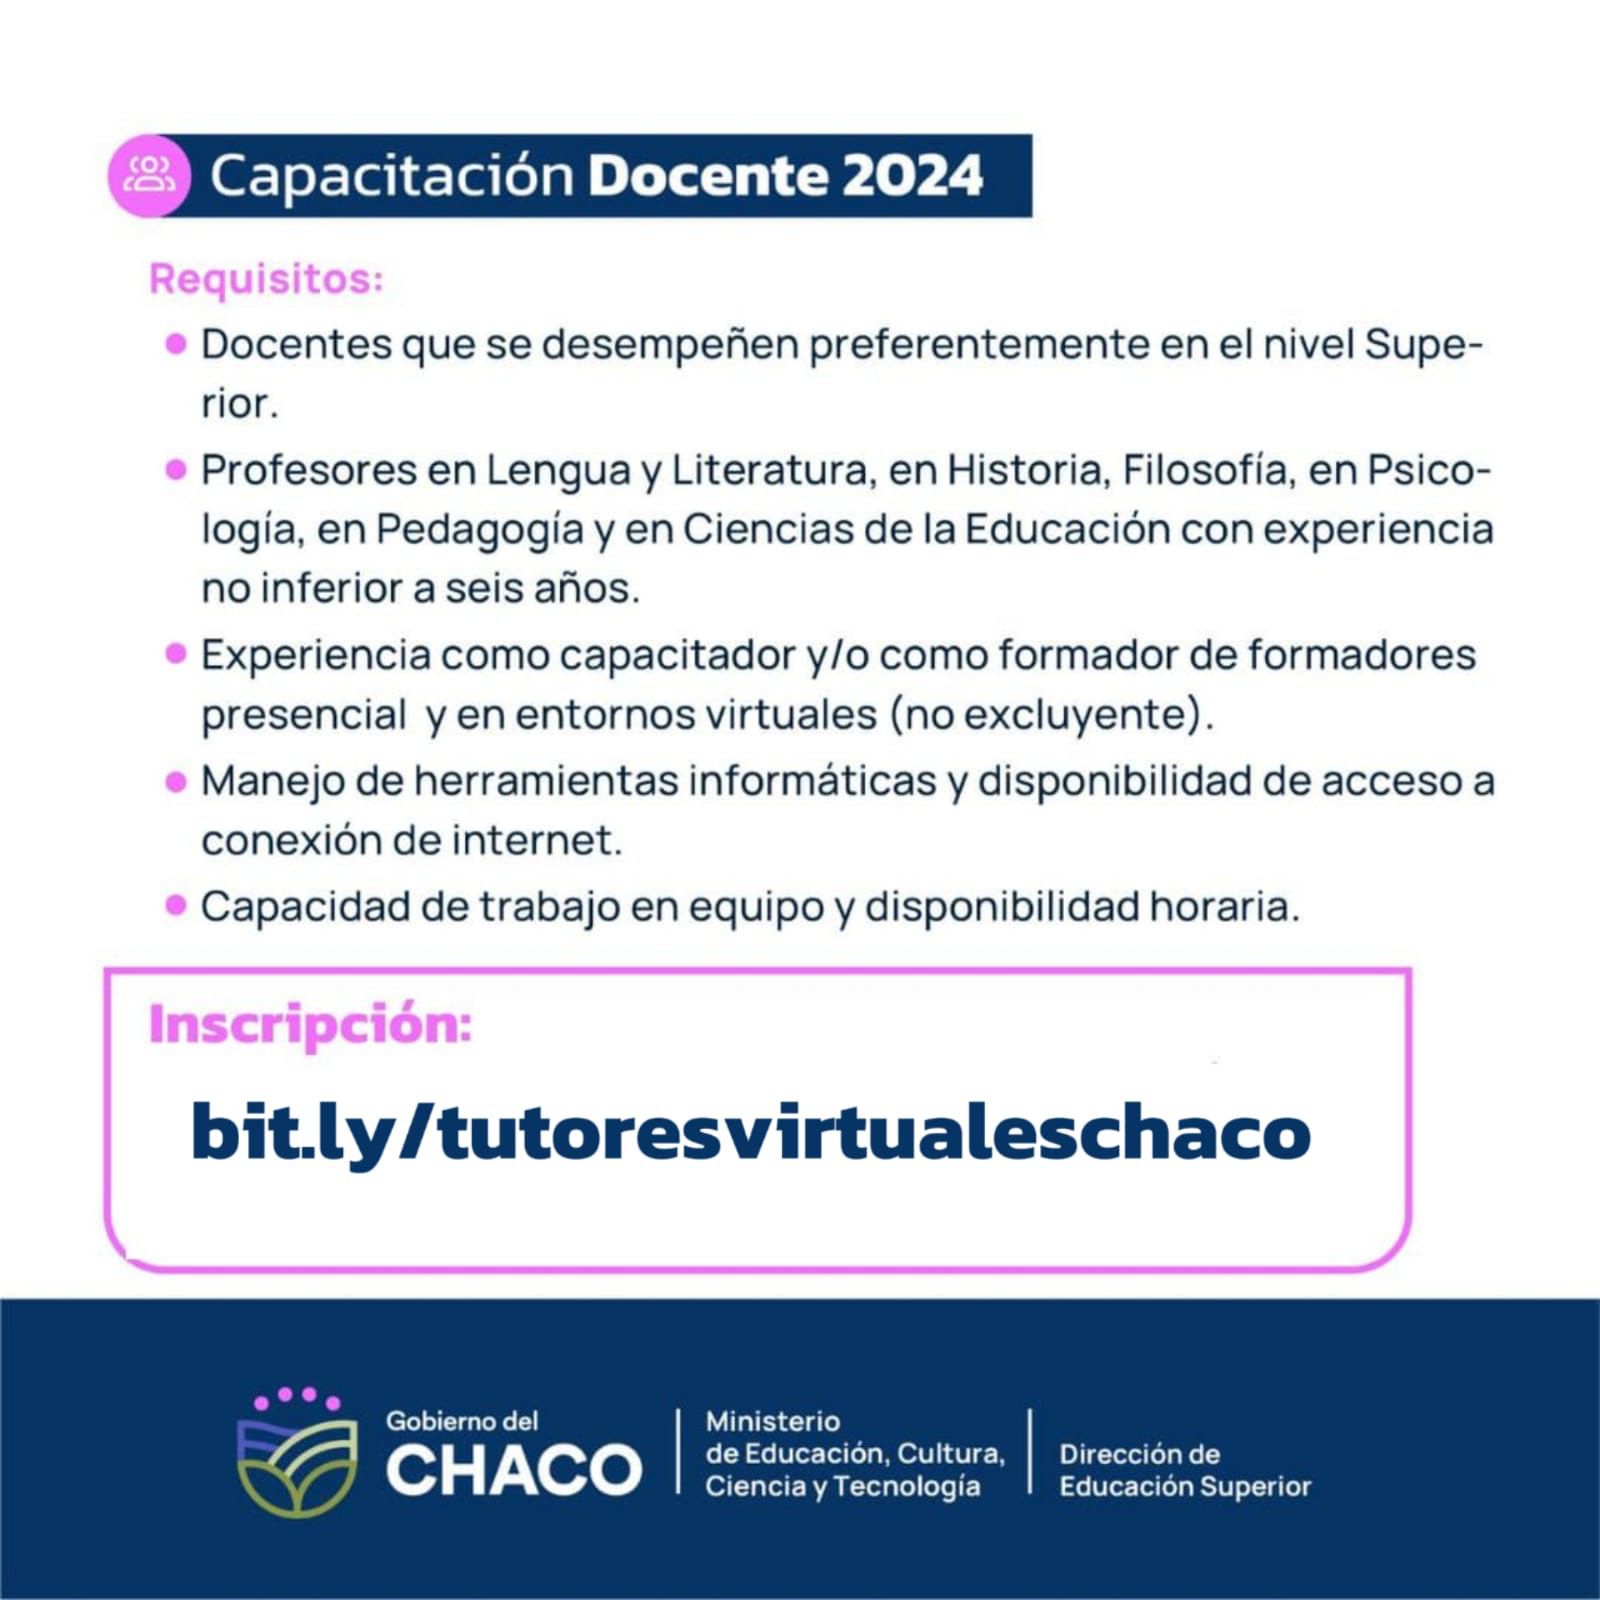 CAPACITACIÓN DOCENTE 2024: EDUCACIÓN ABRE CONVOCATORIA PARA CUBRIR CARGO DE TUTOR VIRTUAL